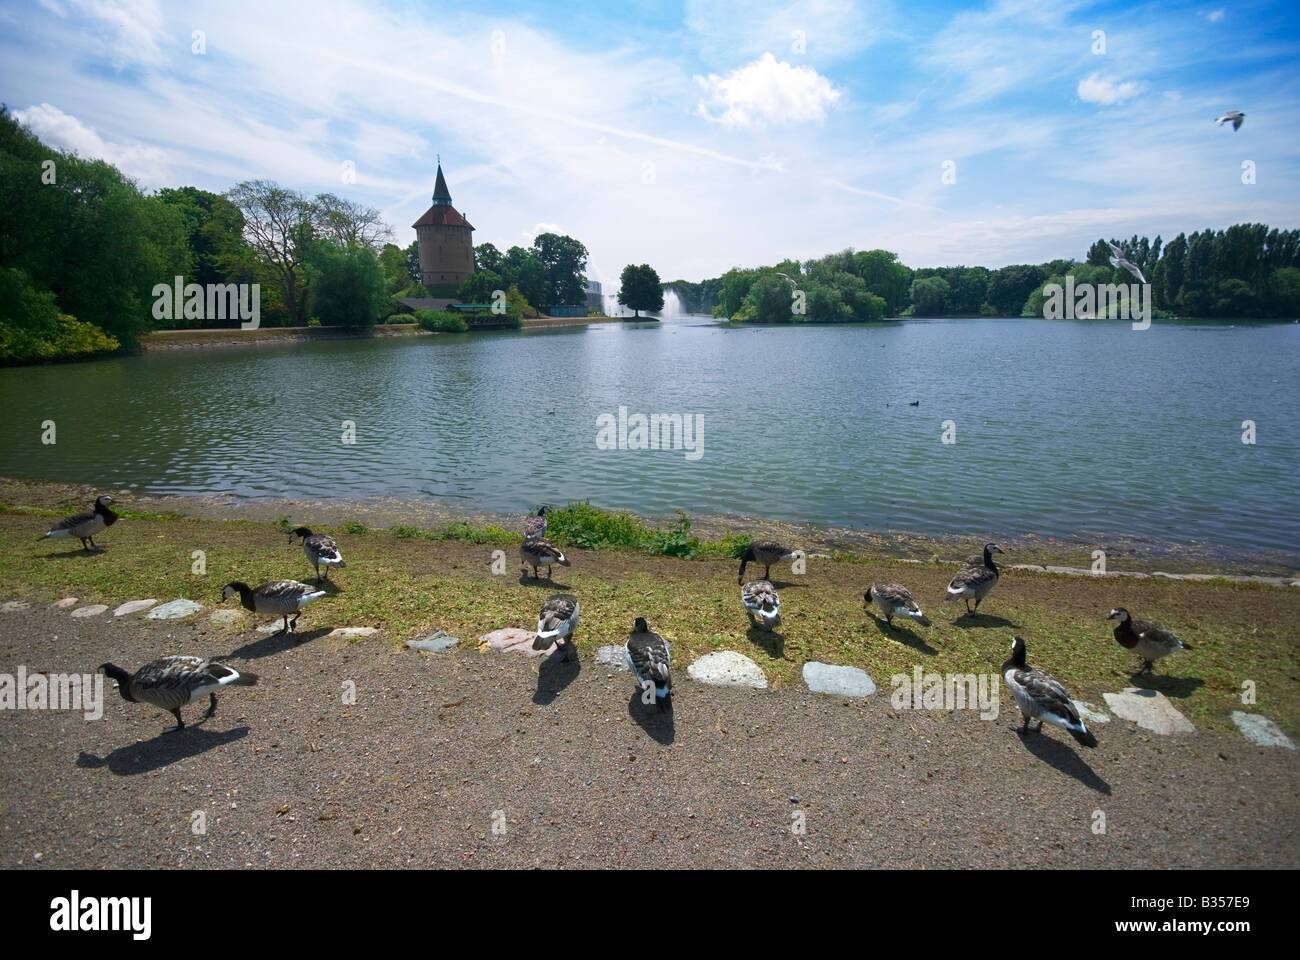 Pildammsparken, il Salice il parco del lago, è il più grande parco di Malmö, Svezia e una popolare area ricreativa. Foto Stock